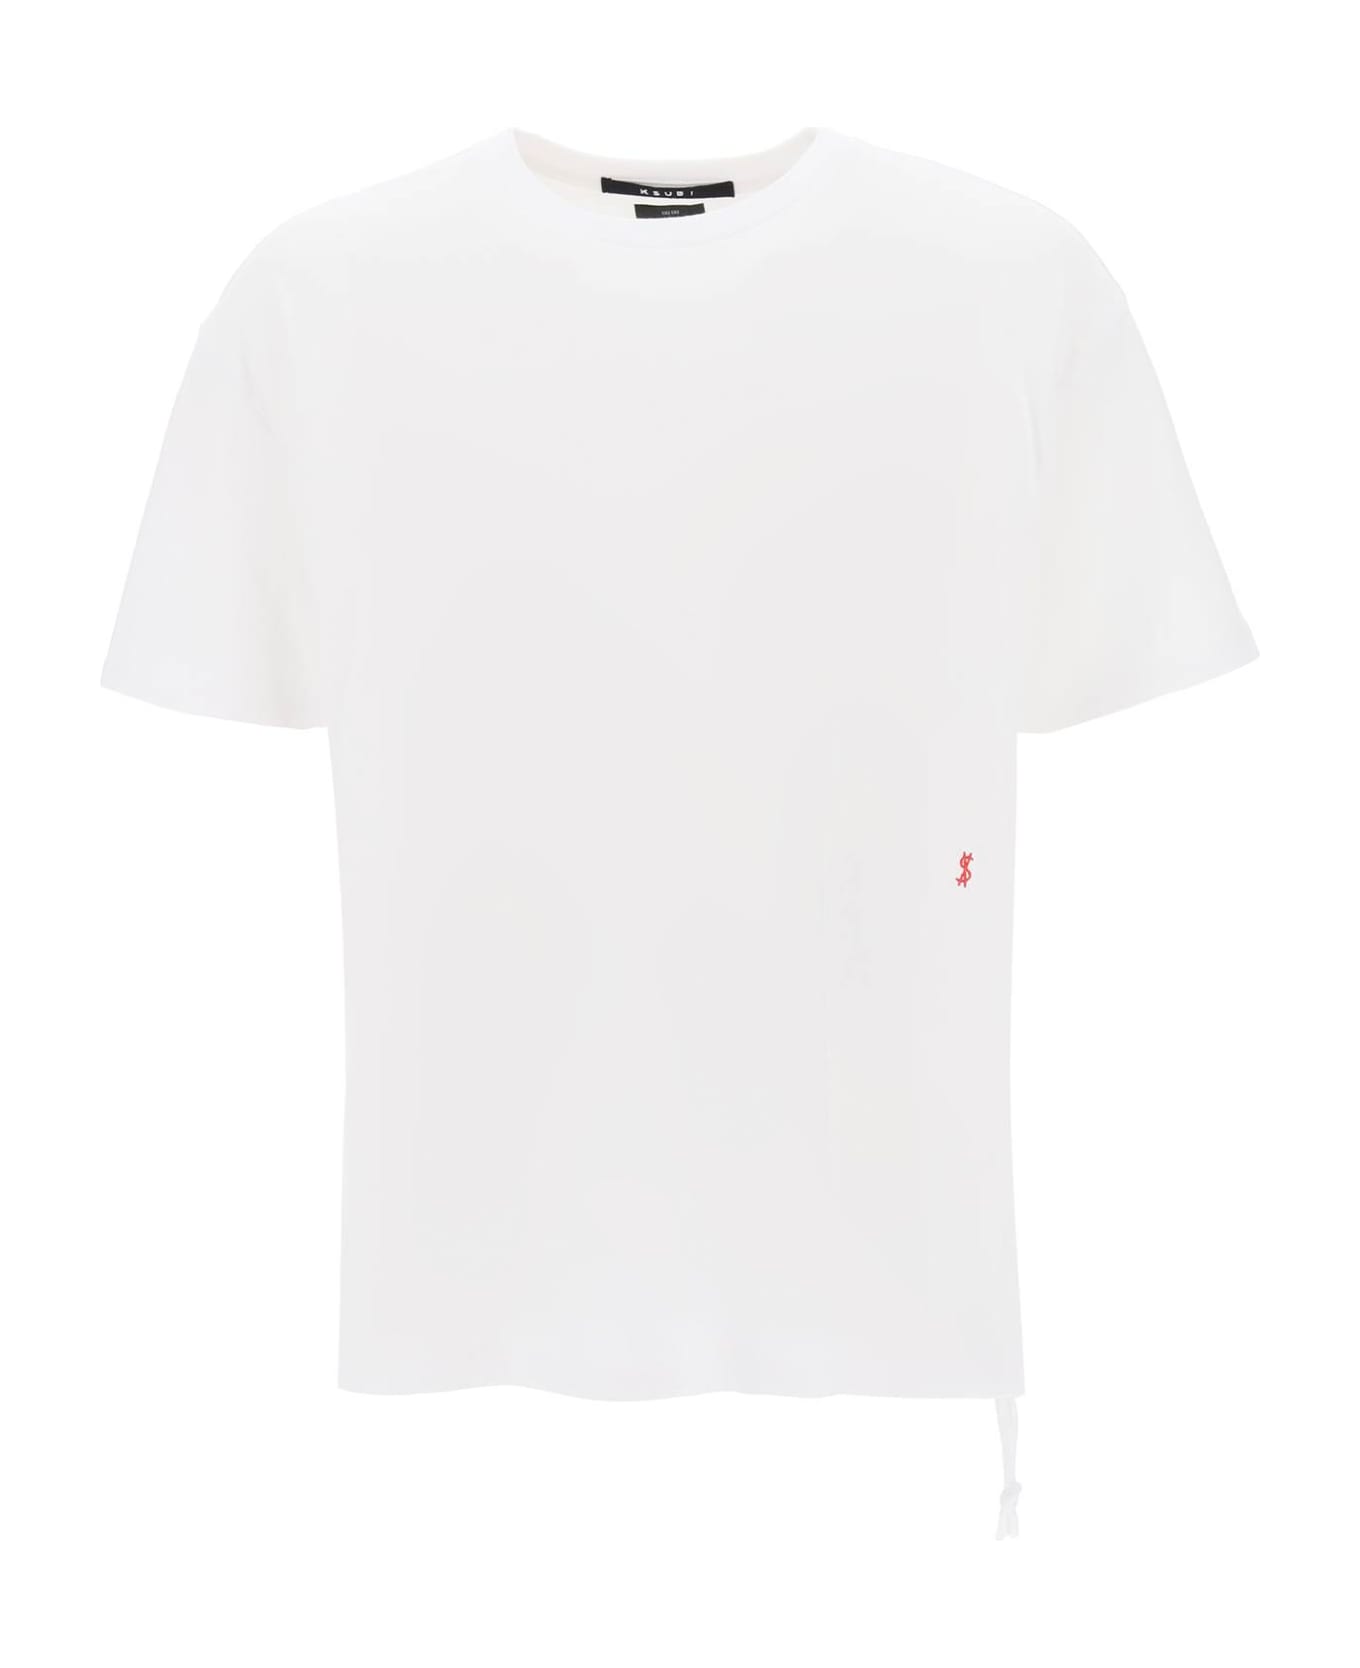 Ksubi '4x4 Biggie' T-shirt - WHITE (White)